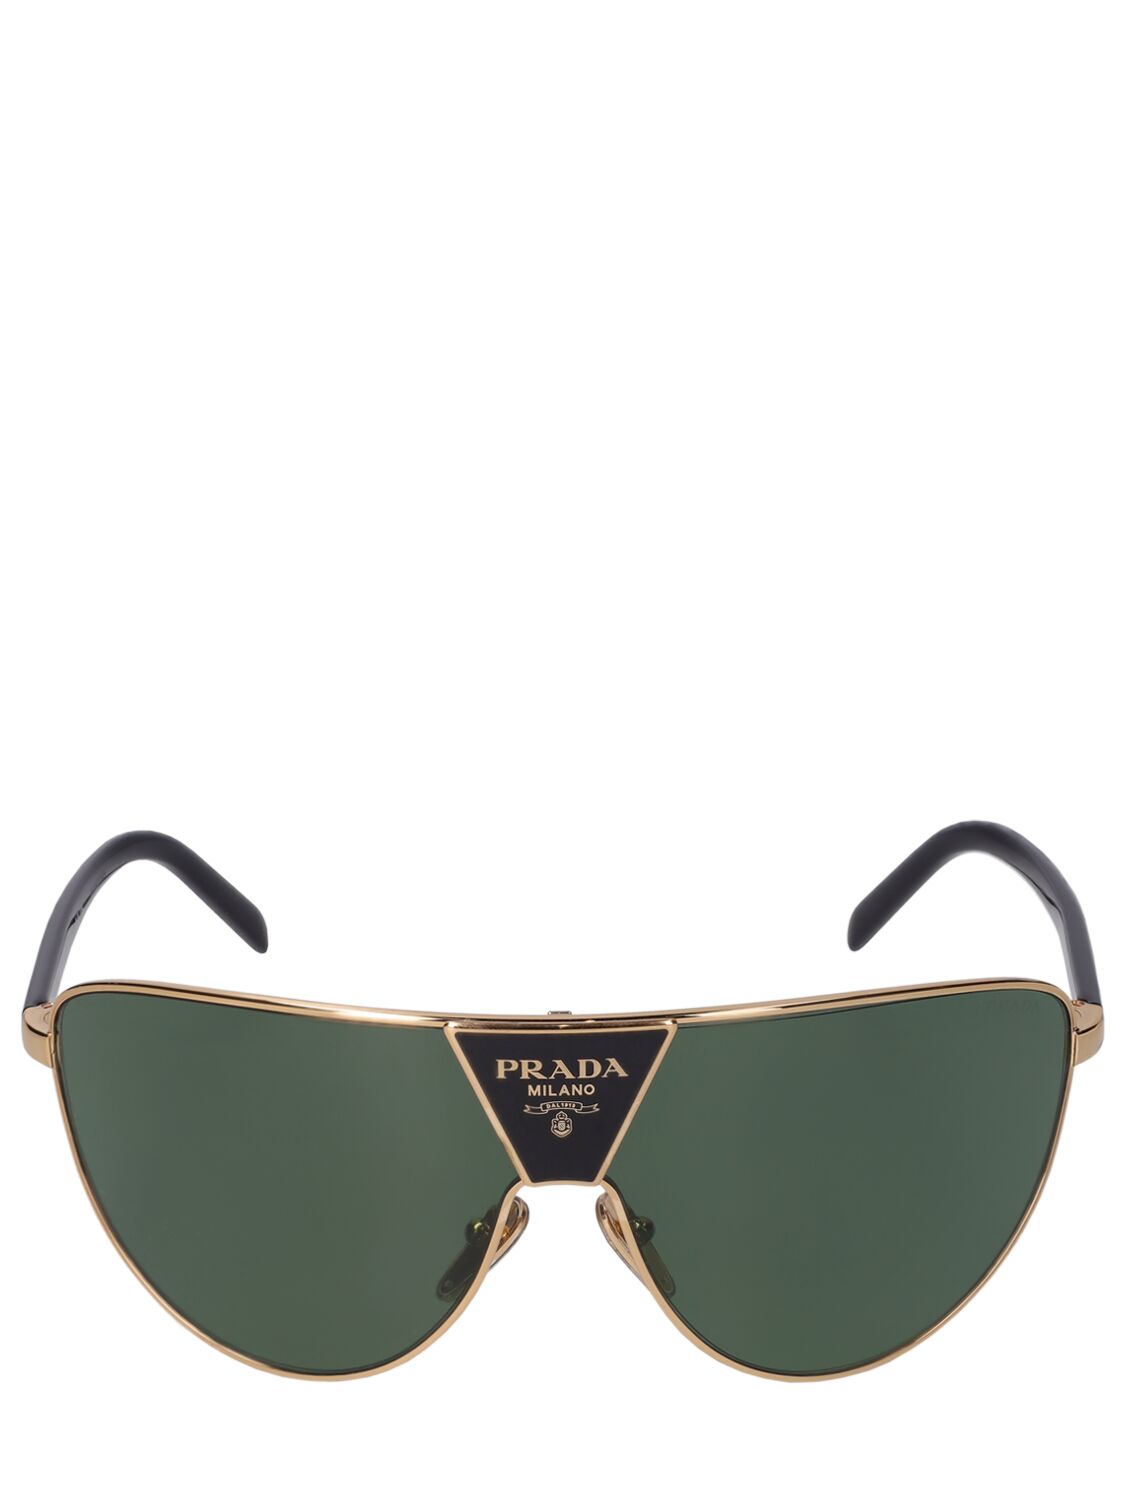 Prada Catwalk Pilot Metal Sunglasses In Black,green